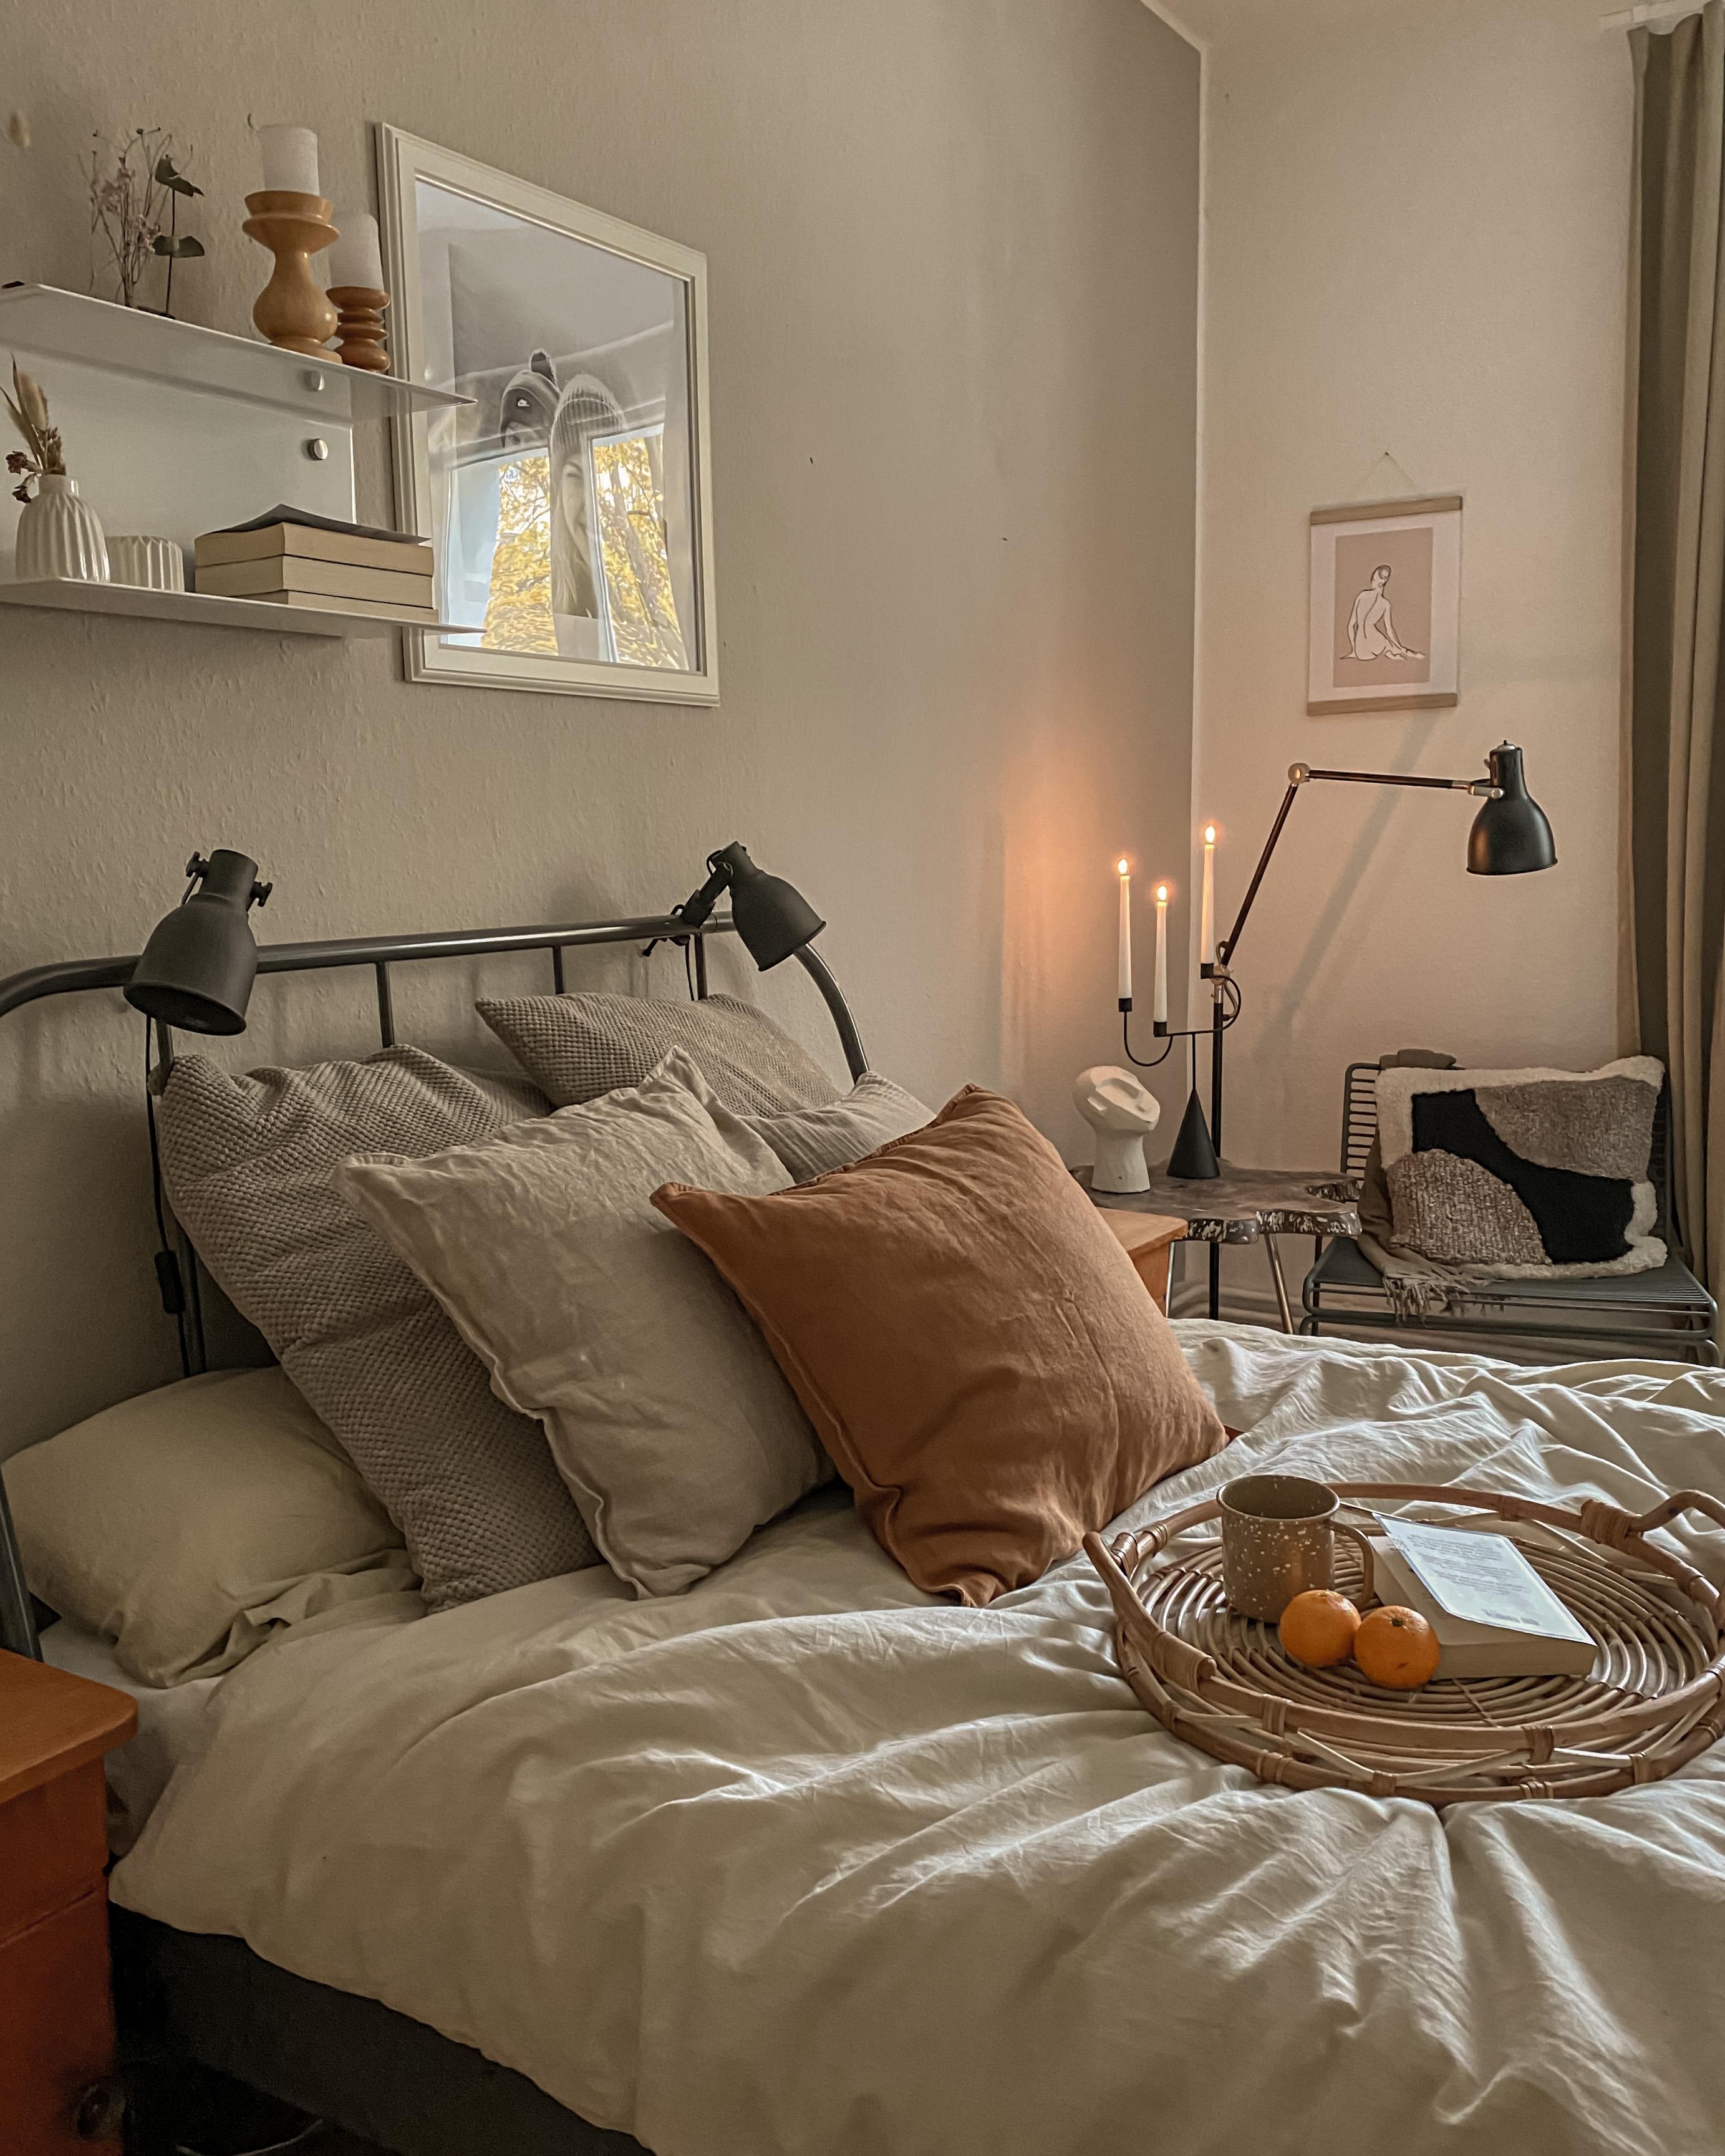 Einfach mal gemütlich machen mit einem guten Buch, Tee und Mandarinen!☕️🍊 #bedroom #schlafzimmer #bettwäsche #tee #kerzen